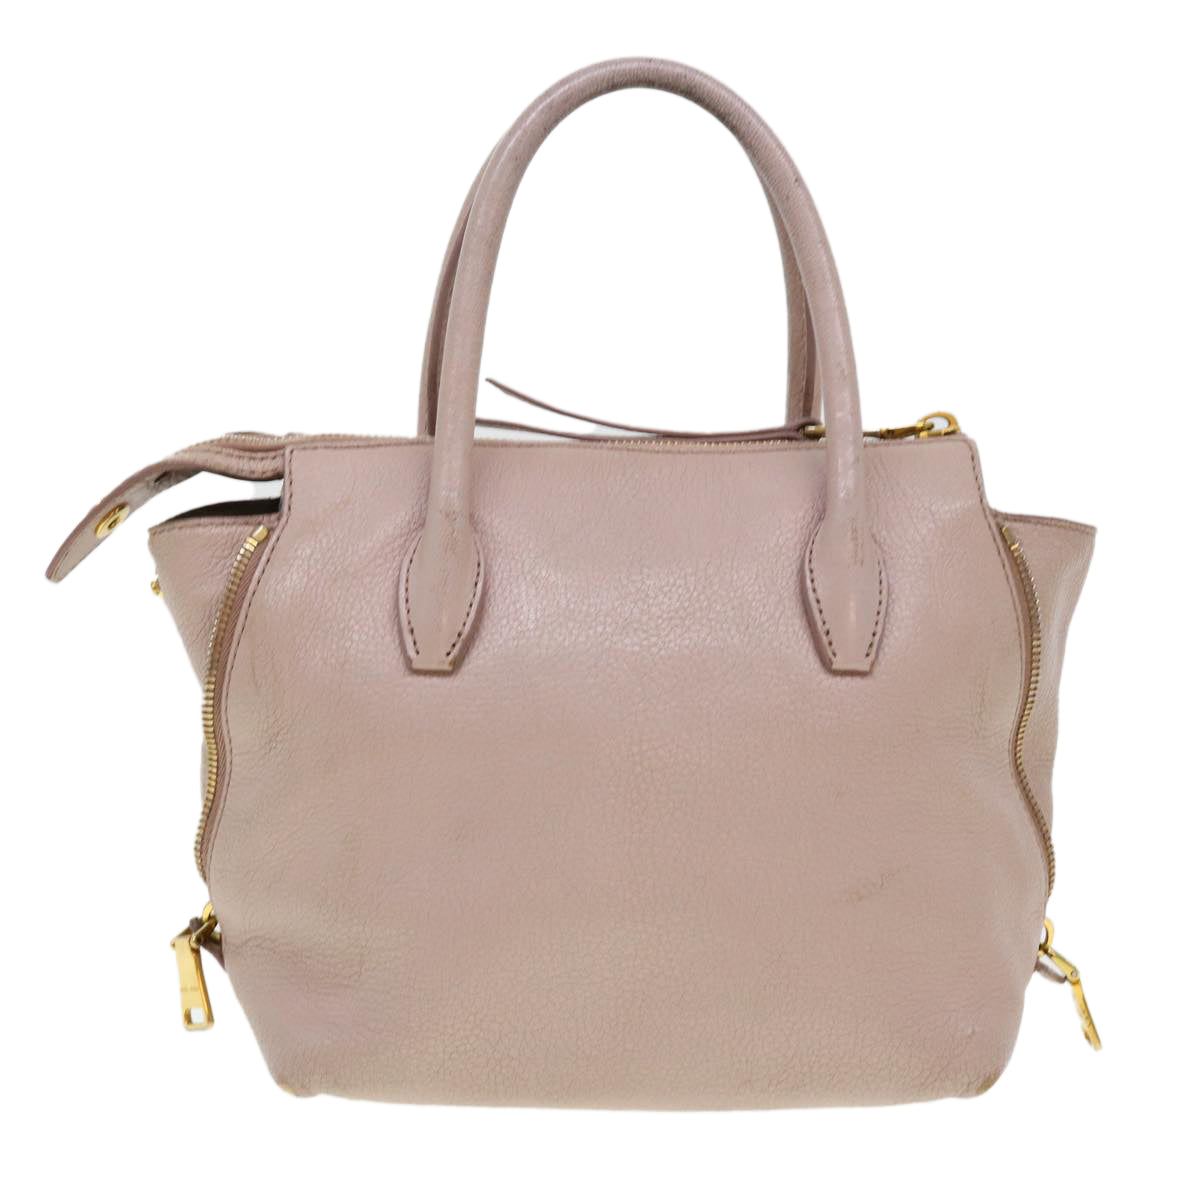 Miu Miu Hand Bag Leather 2way Pink Auth am4258 - 0